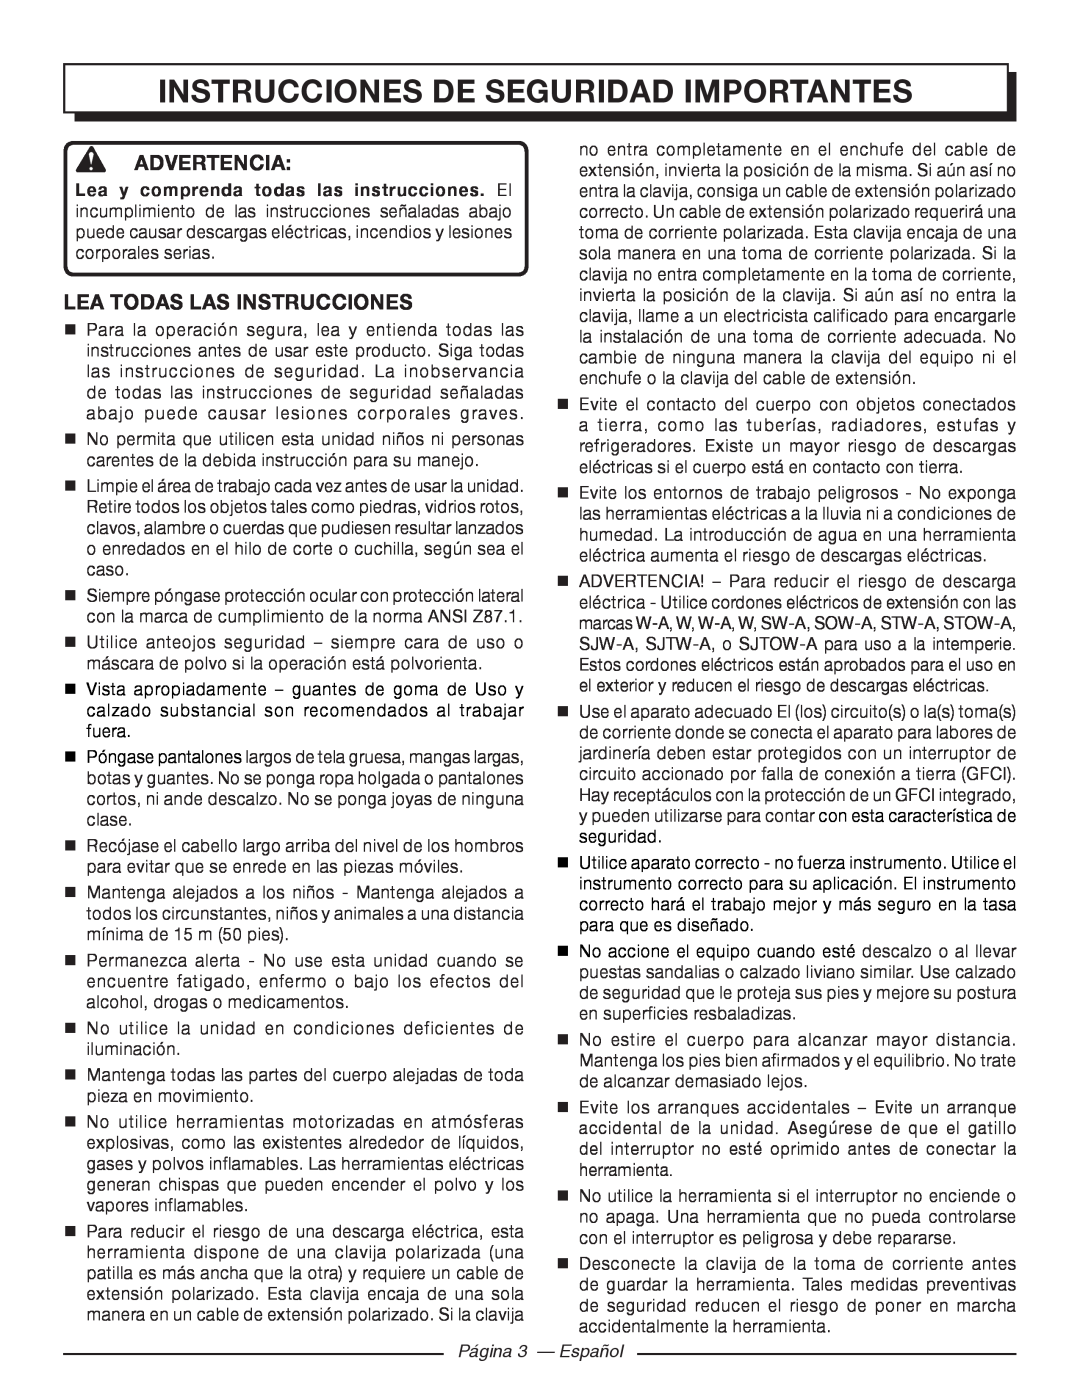 Homelite UT41112 Instrucciones De Seguridad Importantes, Advertencia, Lea todas las instrucciones, Página 3 - Español 